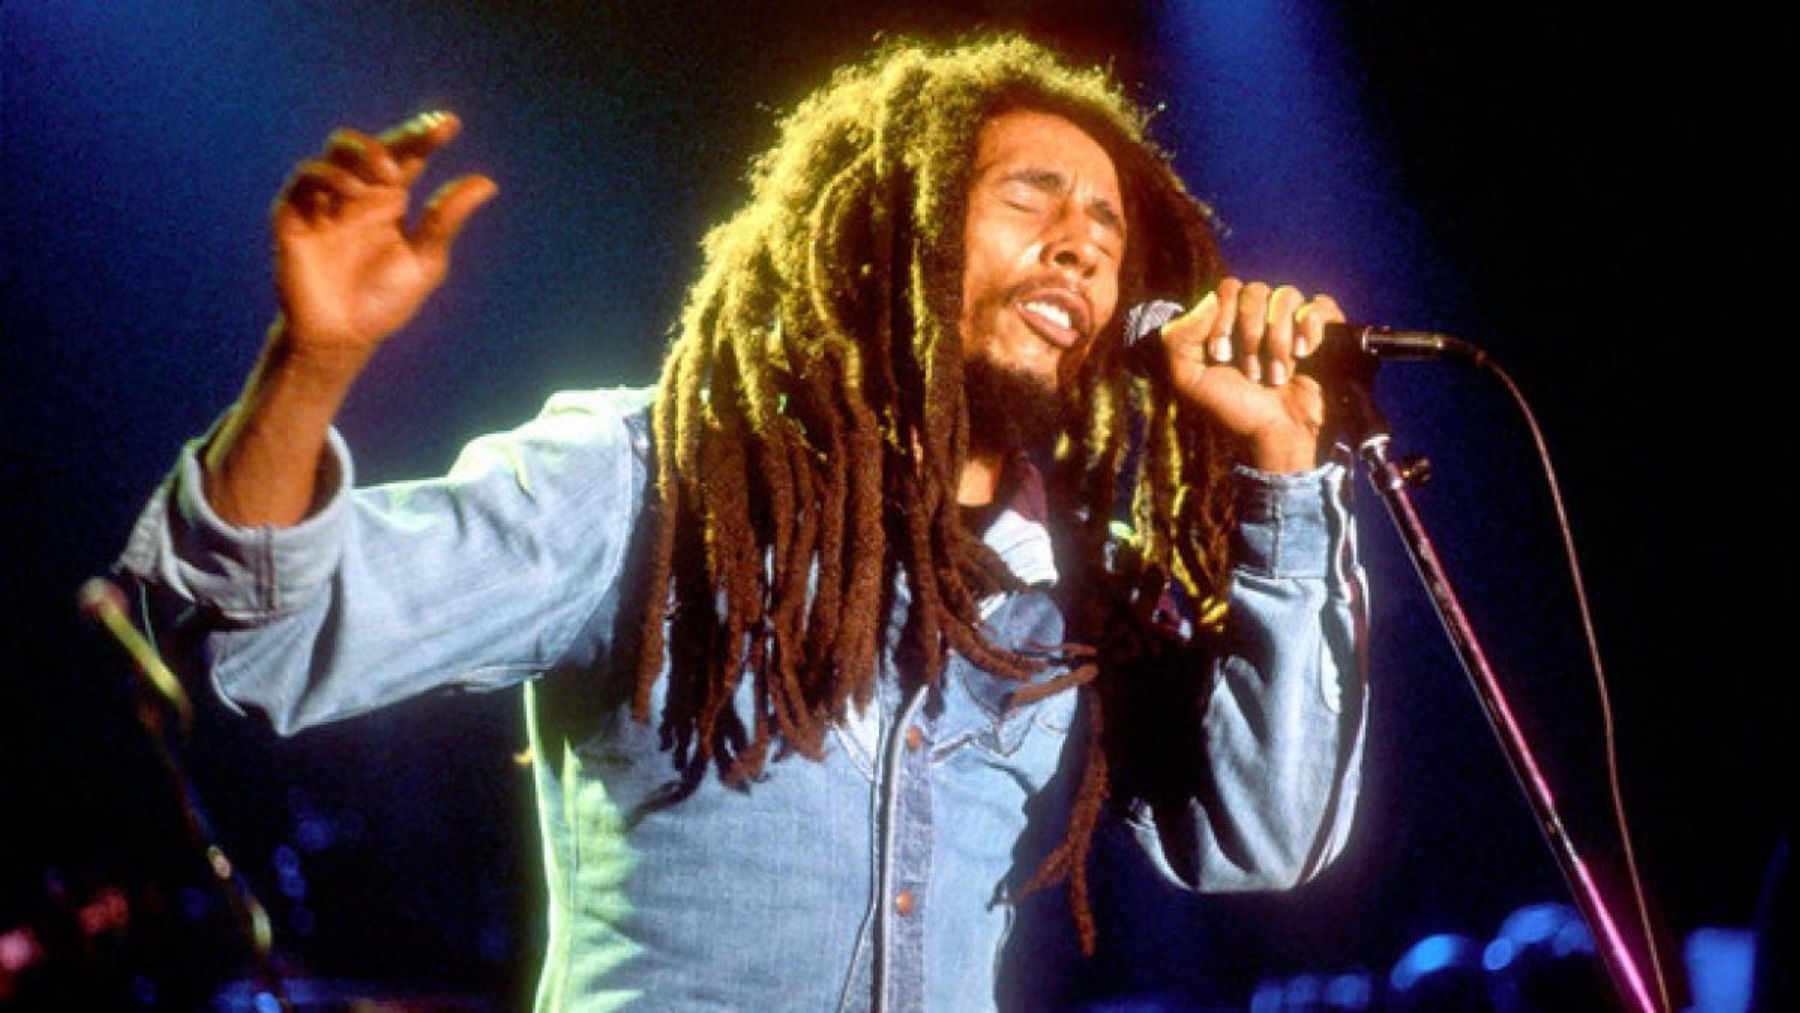 Los 10 datos más curiosos de Bob Marley, el rey del reggae